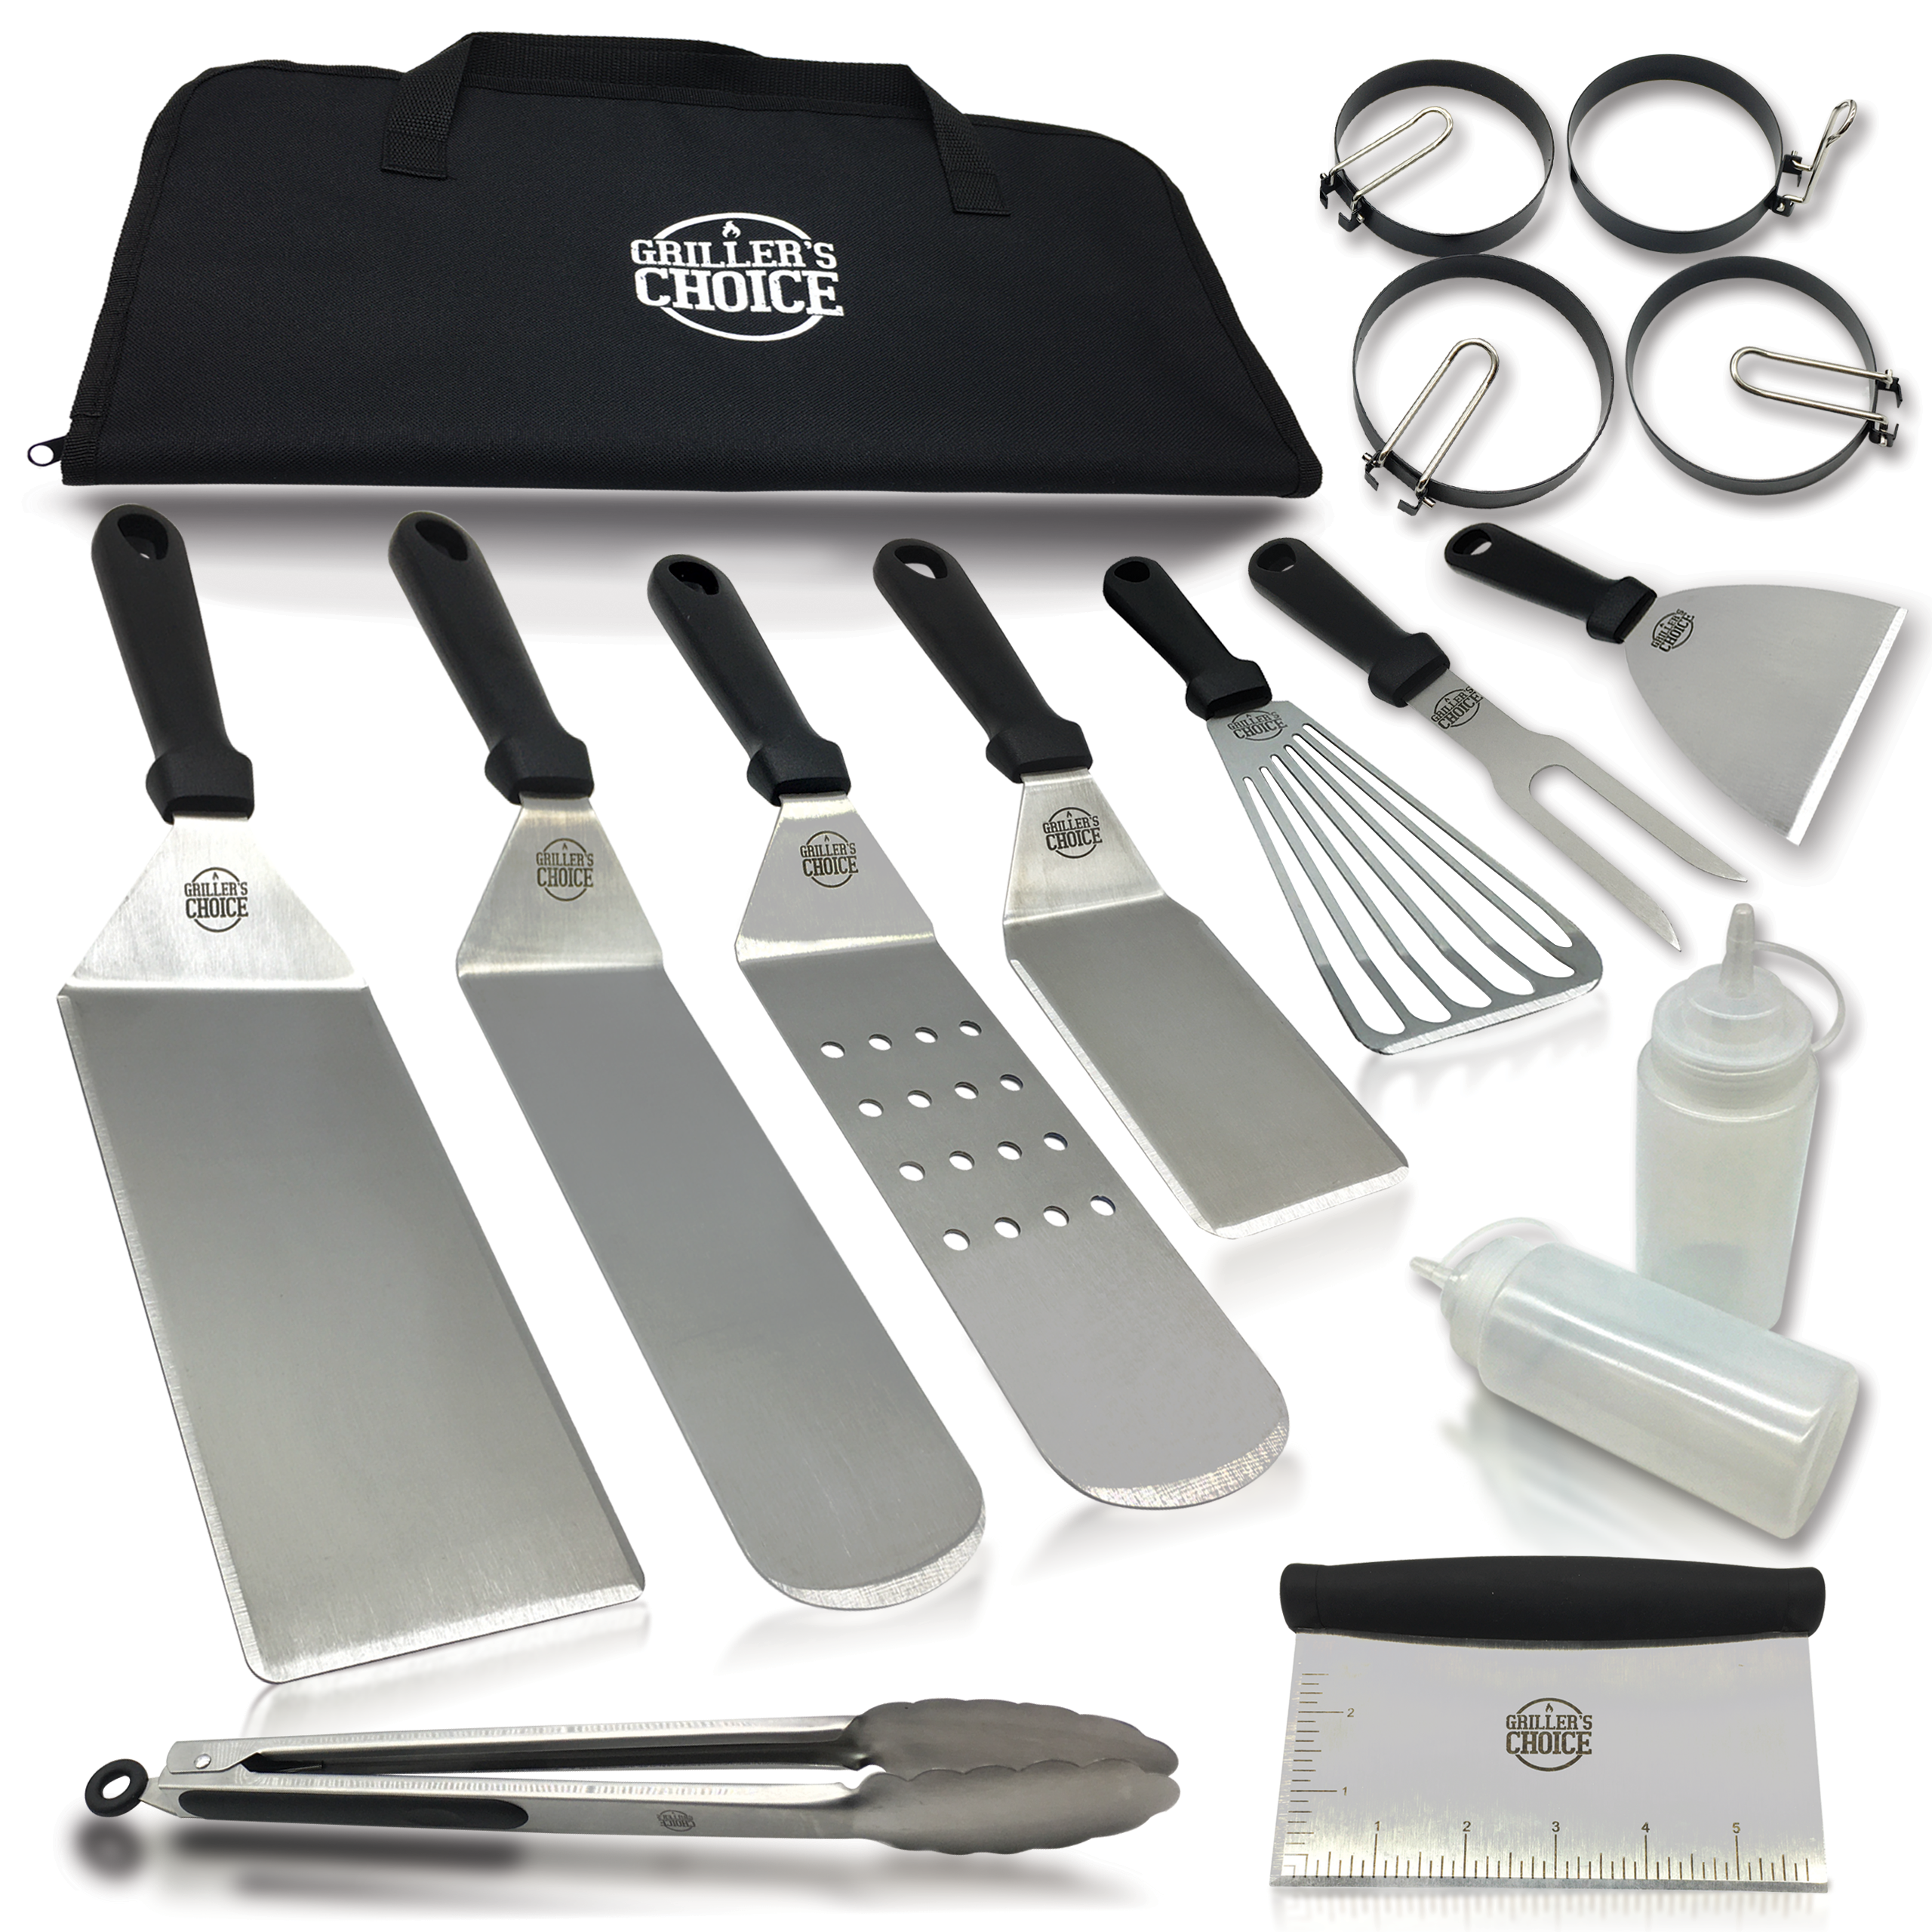 XZNGL Kit d'accessoires pour plaque chauffante 16PCS Ensemble d'outils de  grillade à dessus plat Kit de spatule pour barbecue en acier inoxydable  Ensemble d'ustensiles de cuisine avec sac de transport pour barbecue